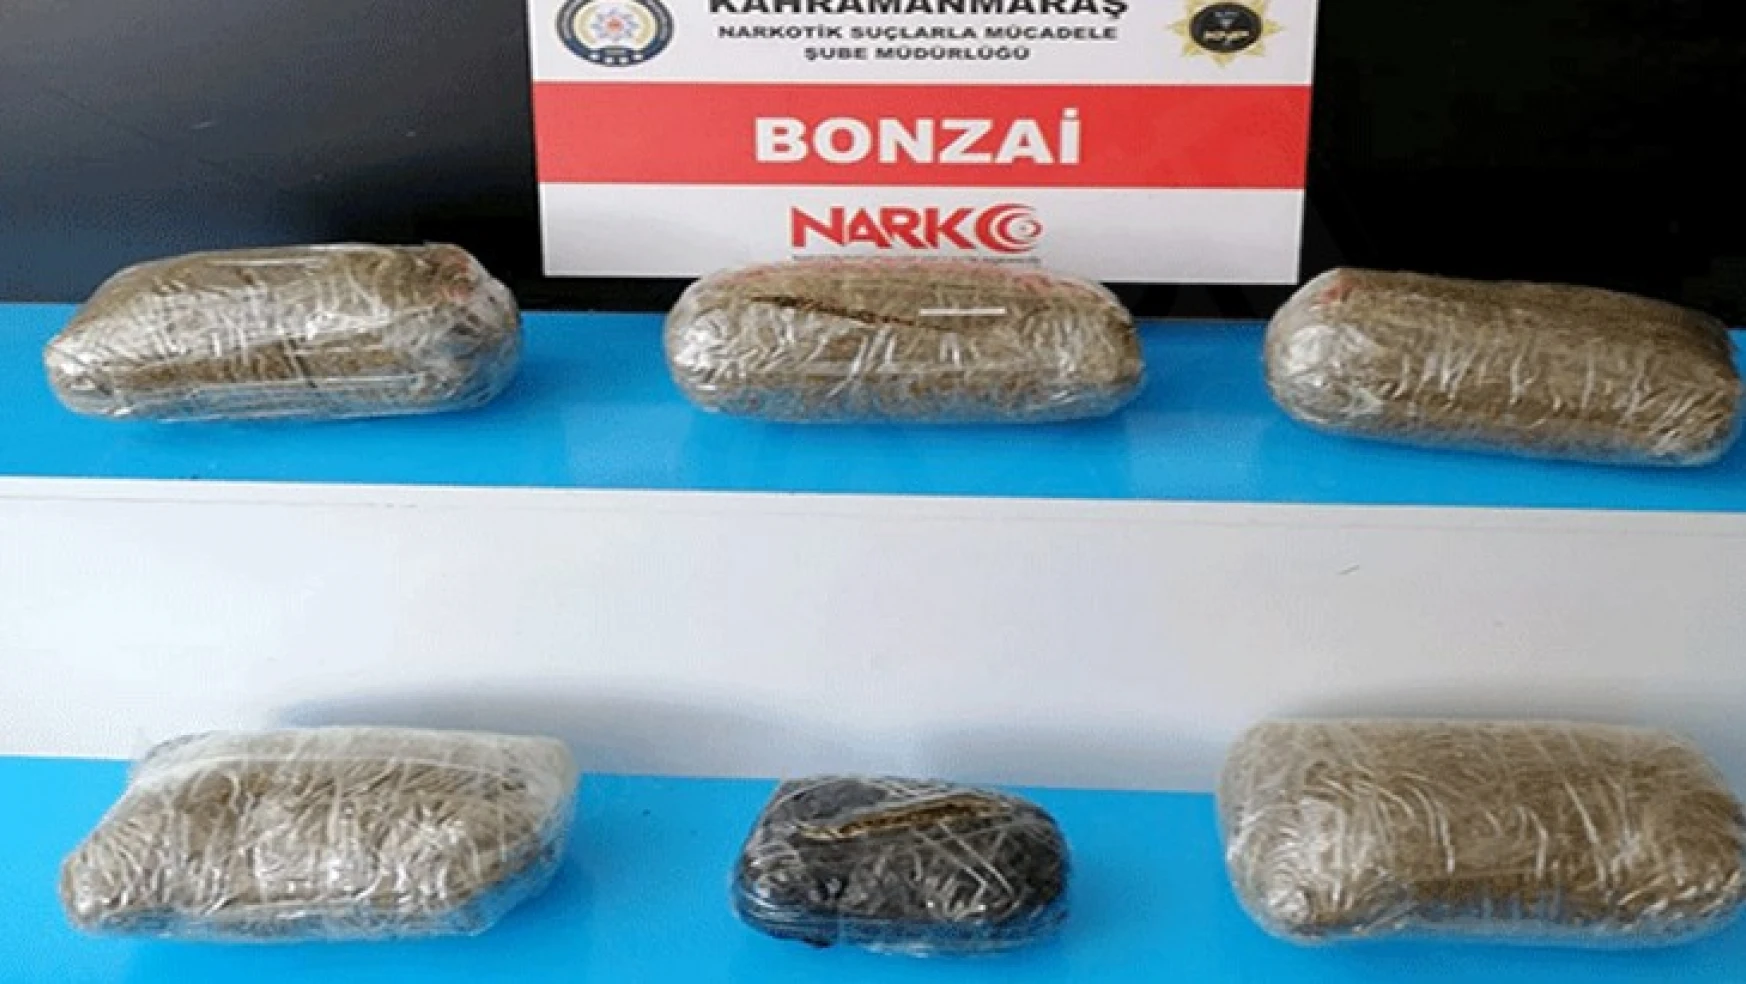 Kahramanmaraş'ta uyuşturucu operasyonu: 2 kişi tutuklandı